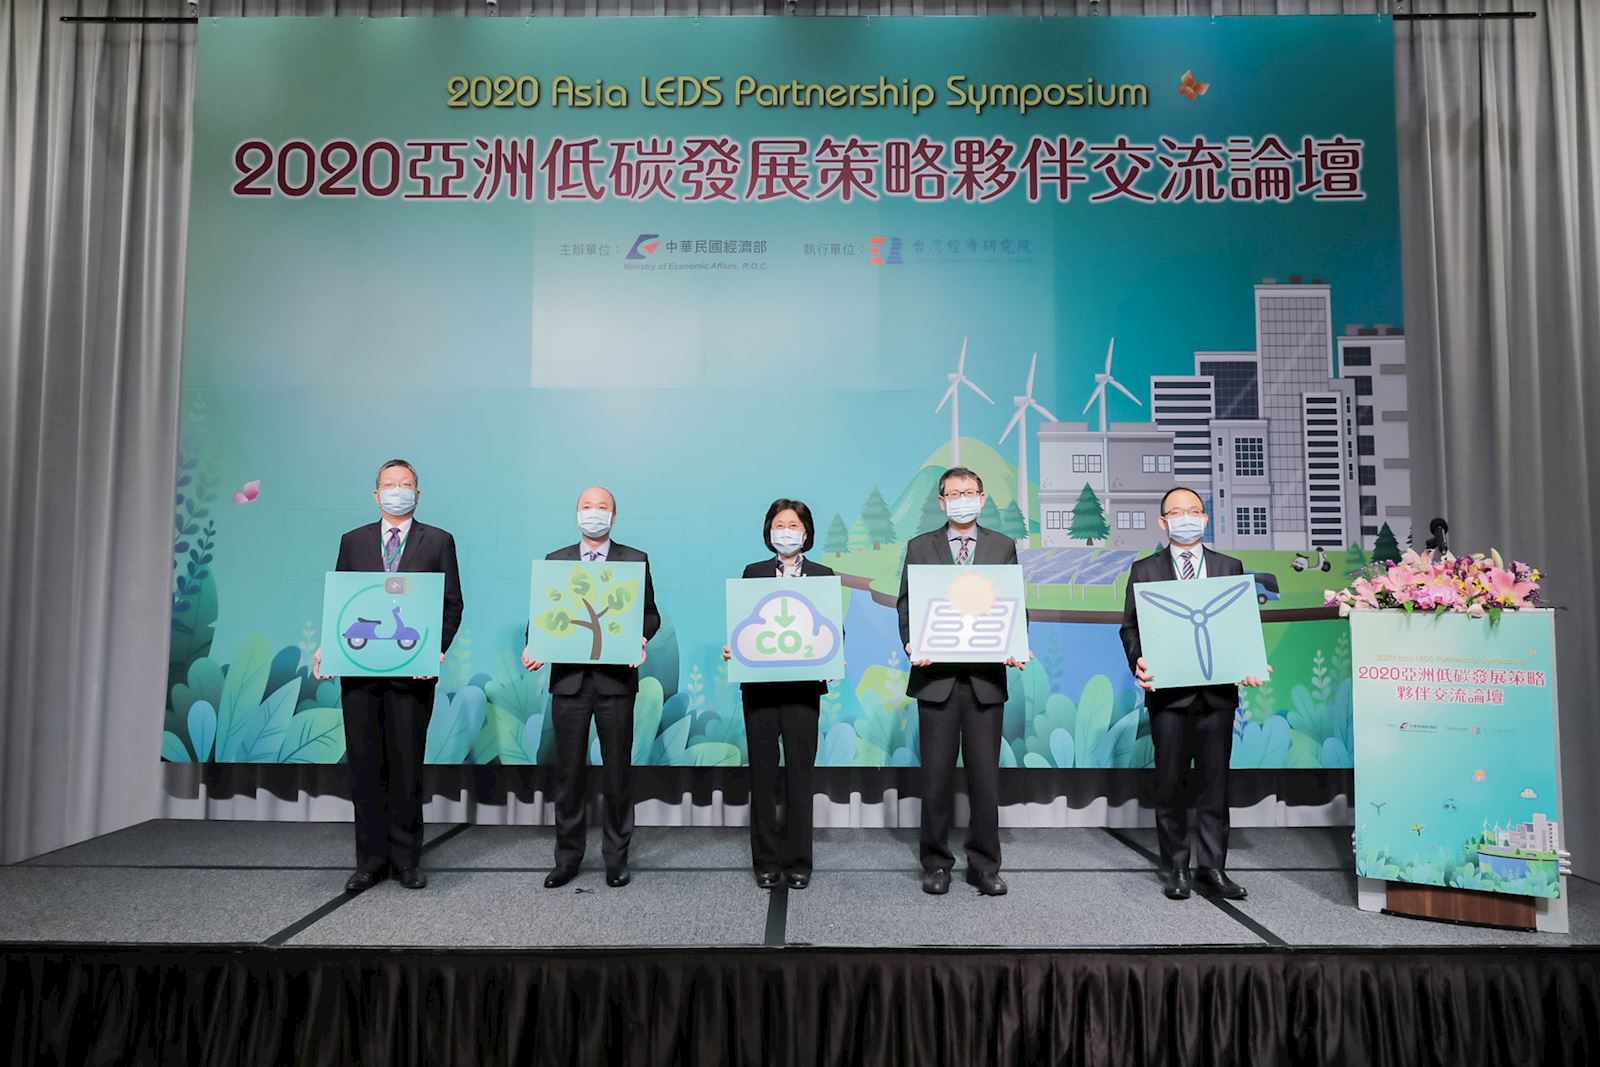 2020年亞洲低碳發展策略夥伴交流論壇開幕儀式